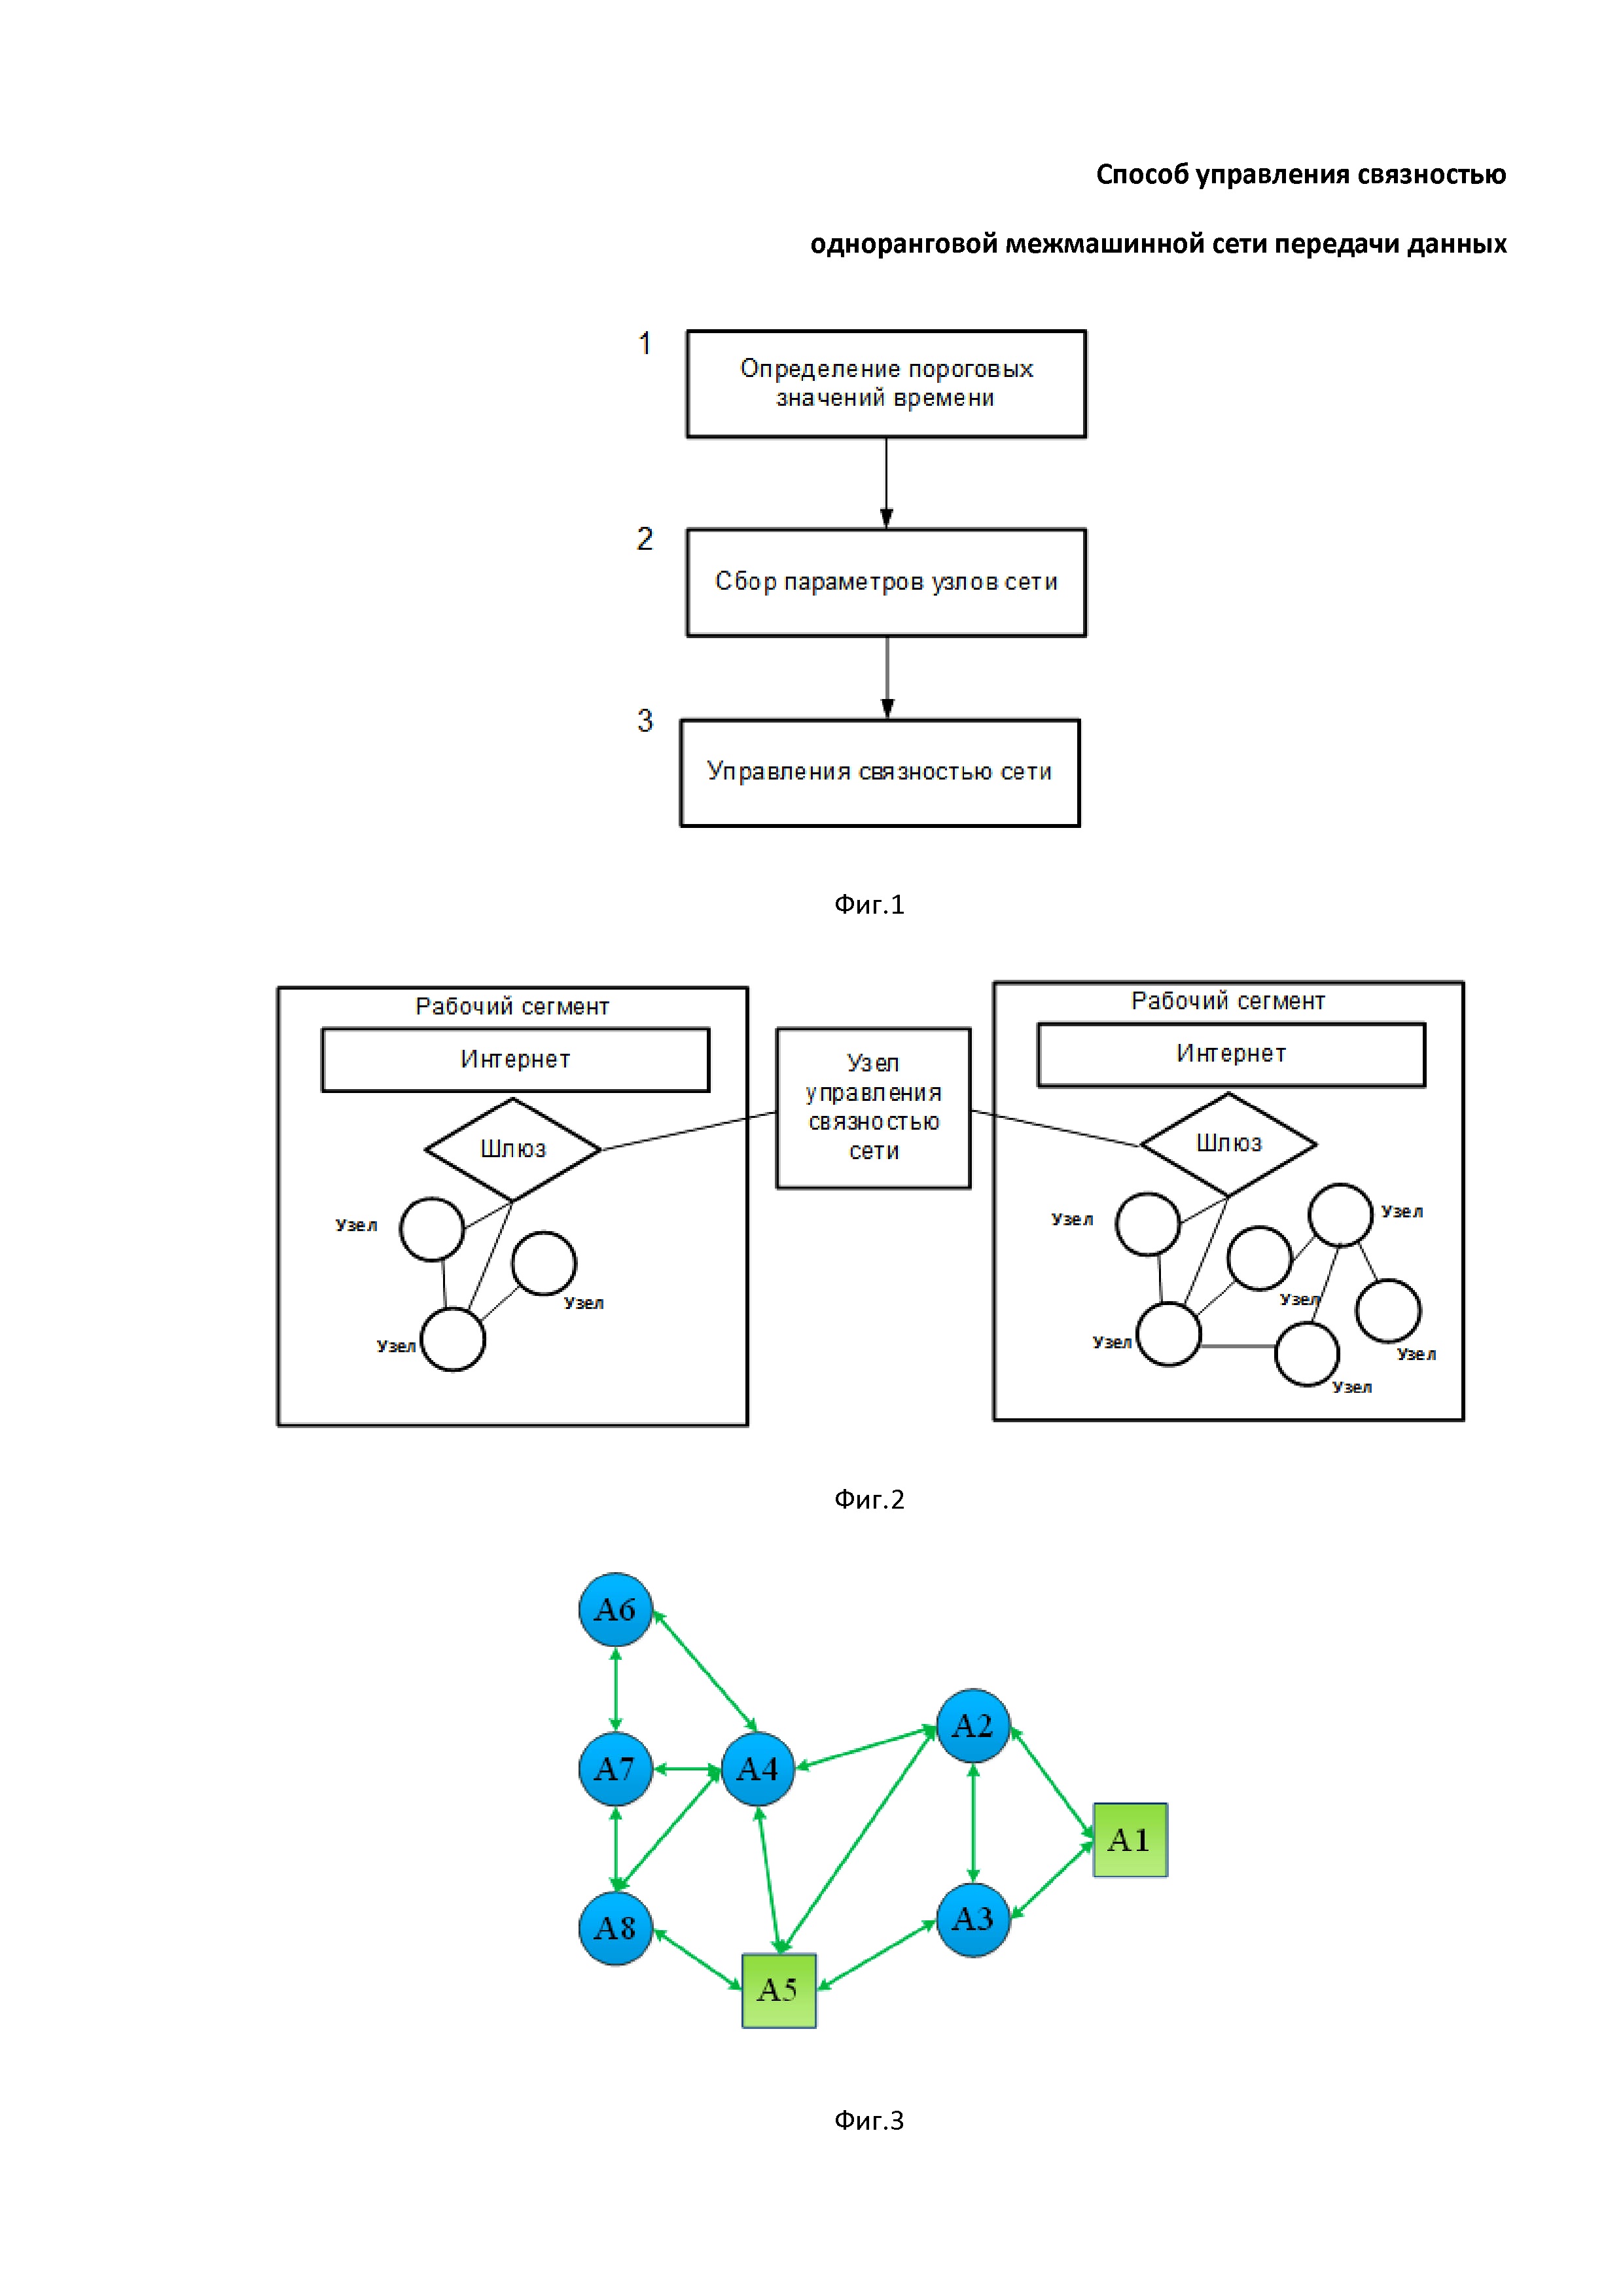 Способ управления связностью одноранговой межмашинной сети передачи данных